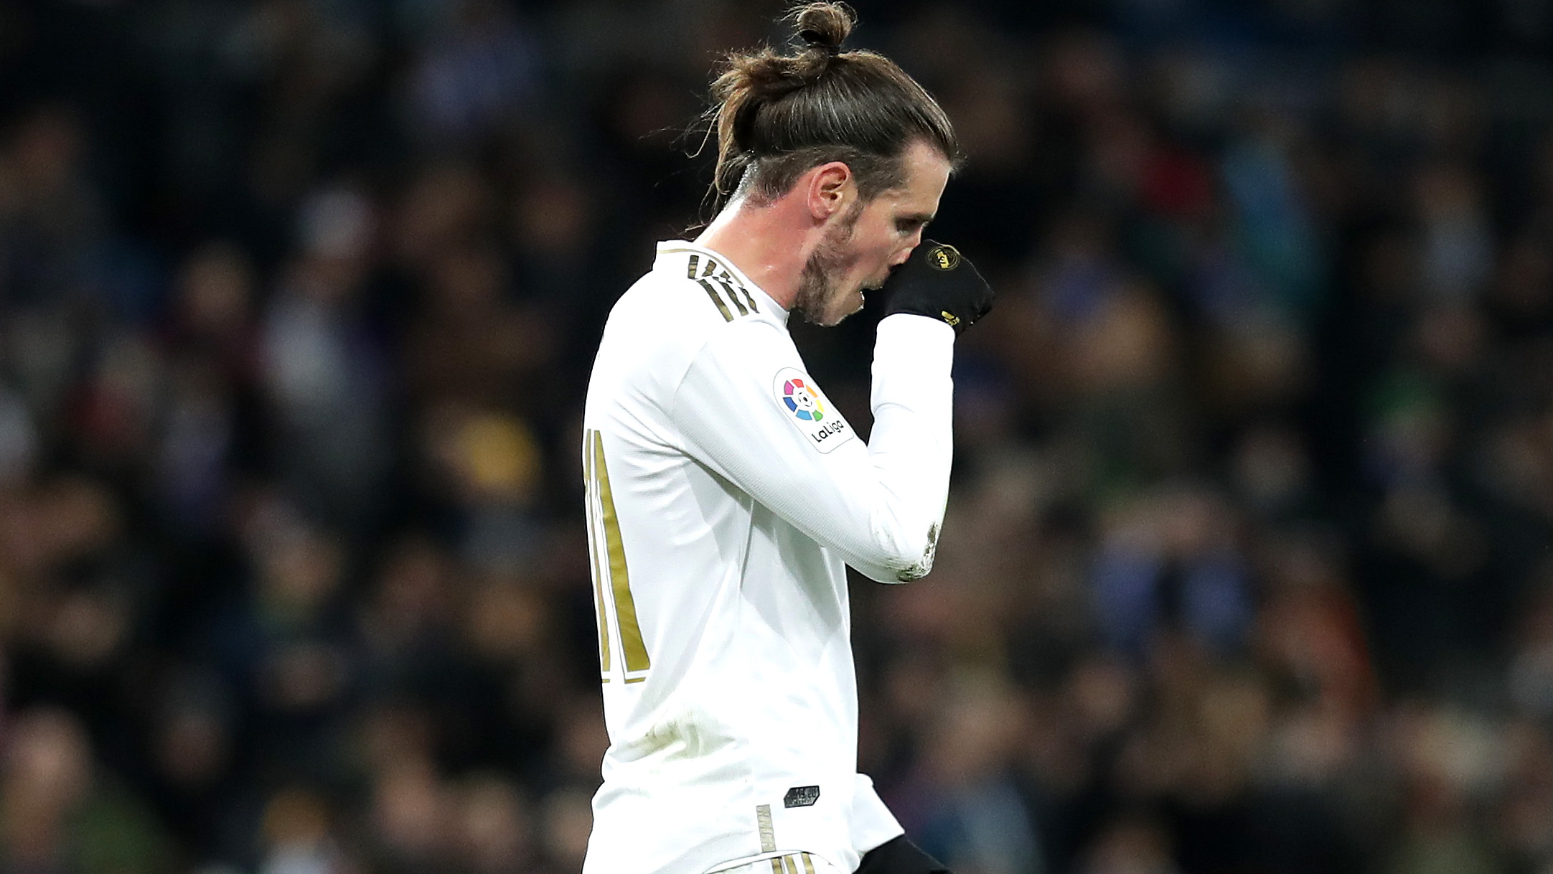 Mối tình của Gareth Bale với Cardiff City và mối liên hệ chuyển nhượng giật gân với câu lạc bộ quê hương (phần 1)